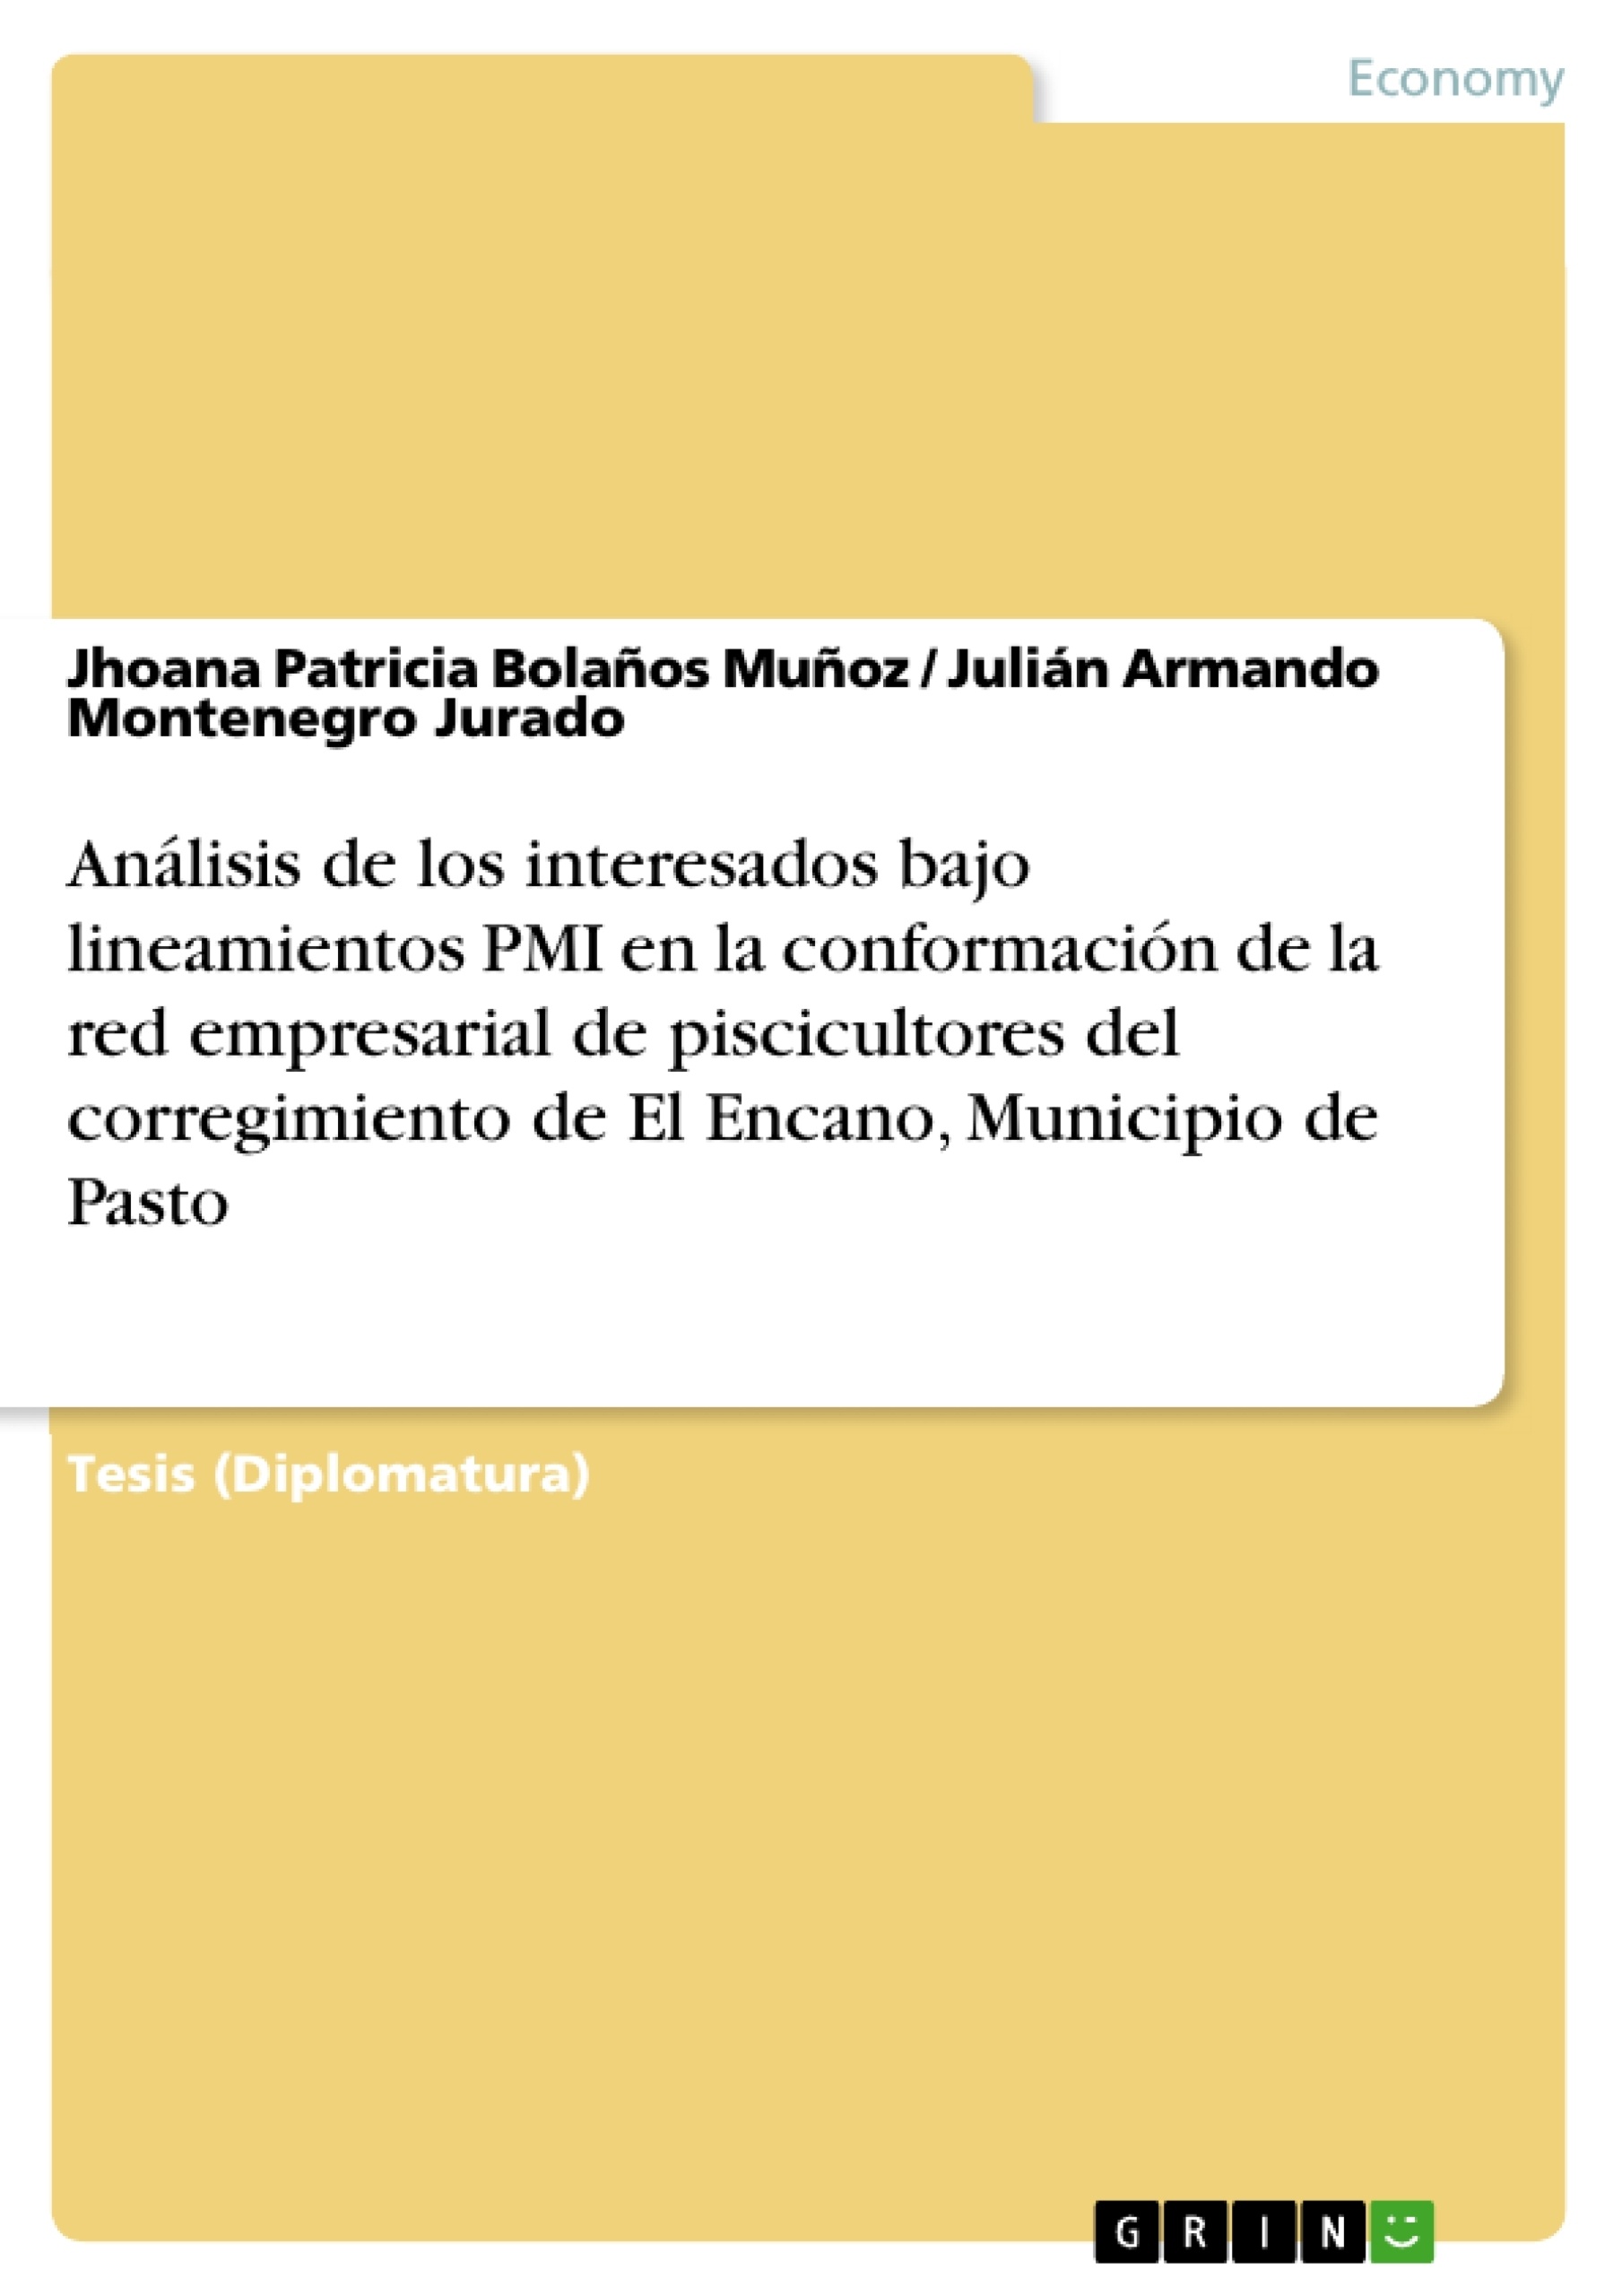 Título: Análisis de los interesados bajo lineamientos PMI en la conformación de la red empresarial de piscicultores del corregimiento de El Encano, Municipio de Pasto